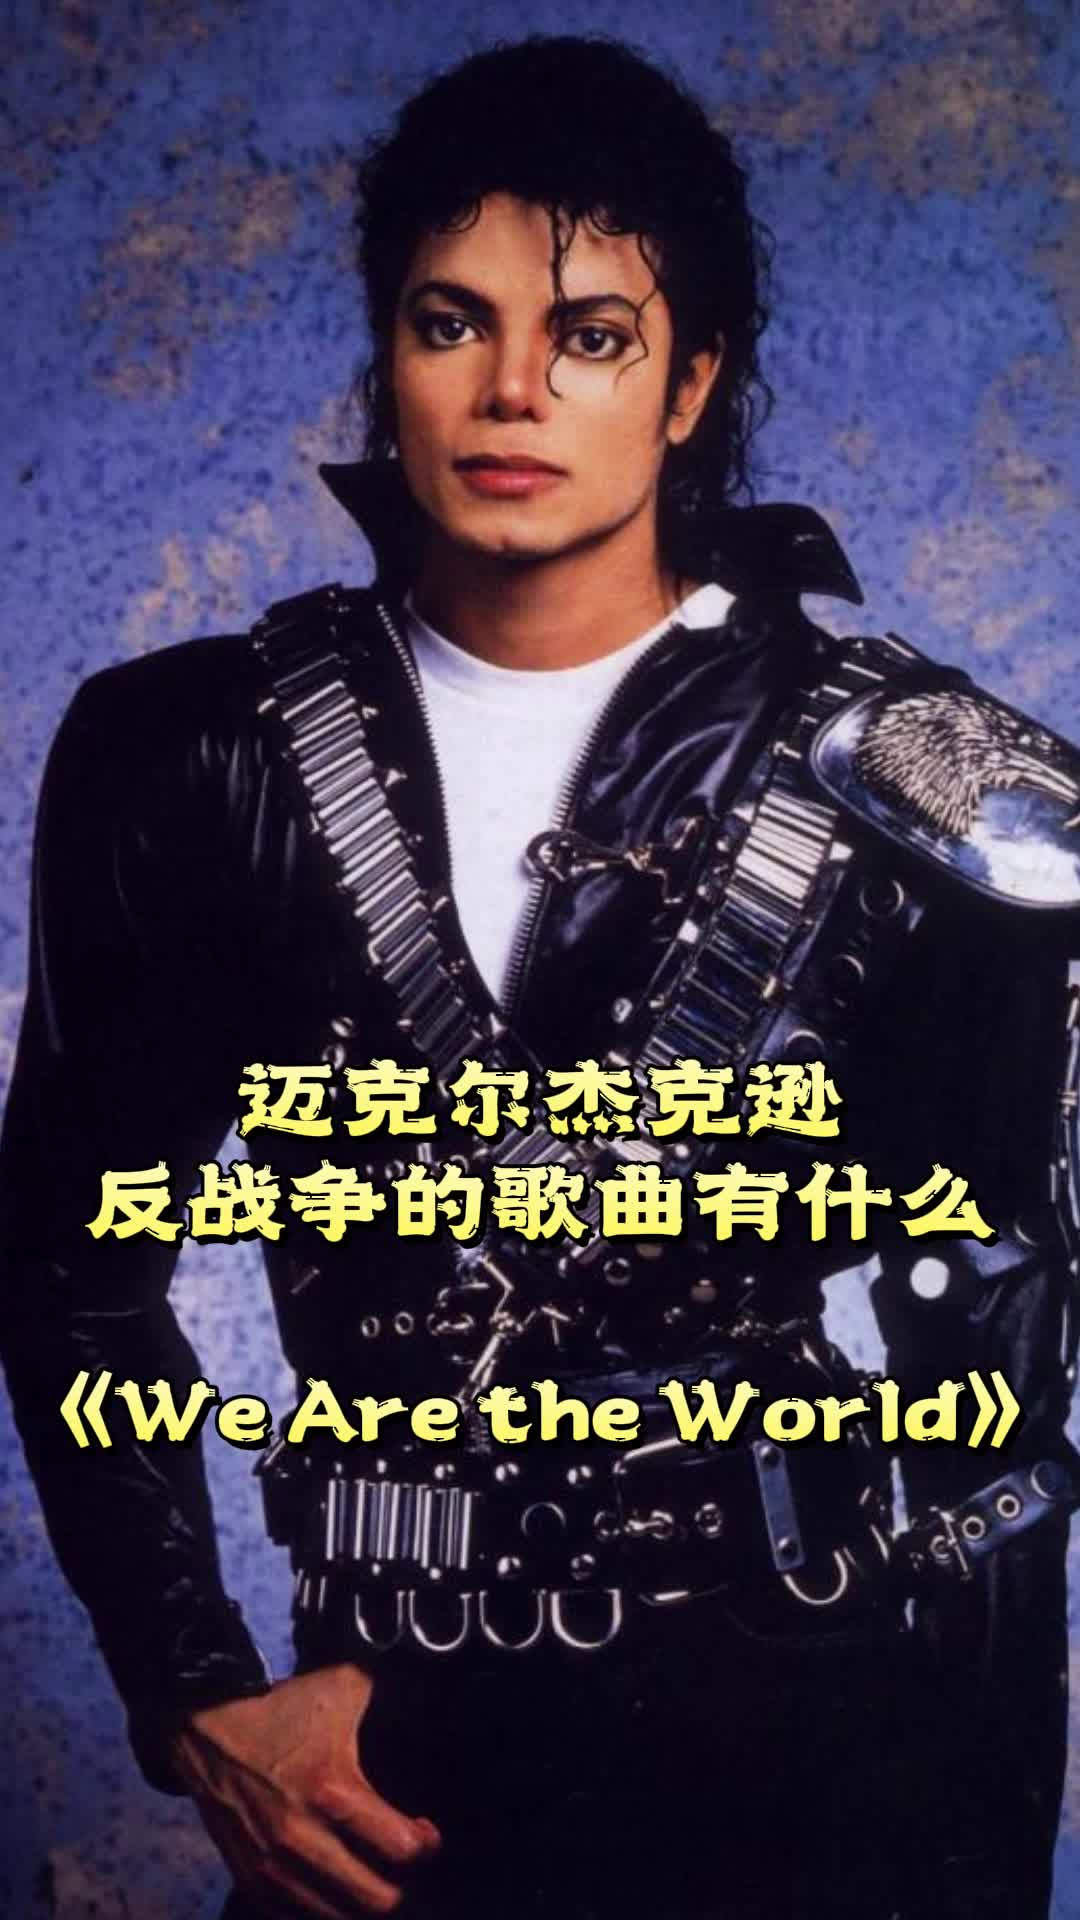 迈克尔杰克逊反战争的歌曲有《we are the world》,一起欣赏吧